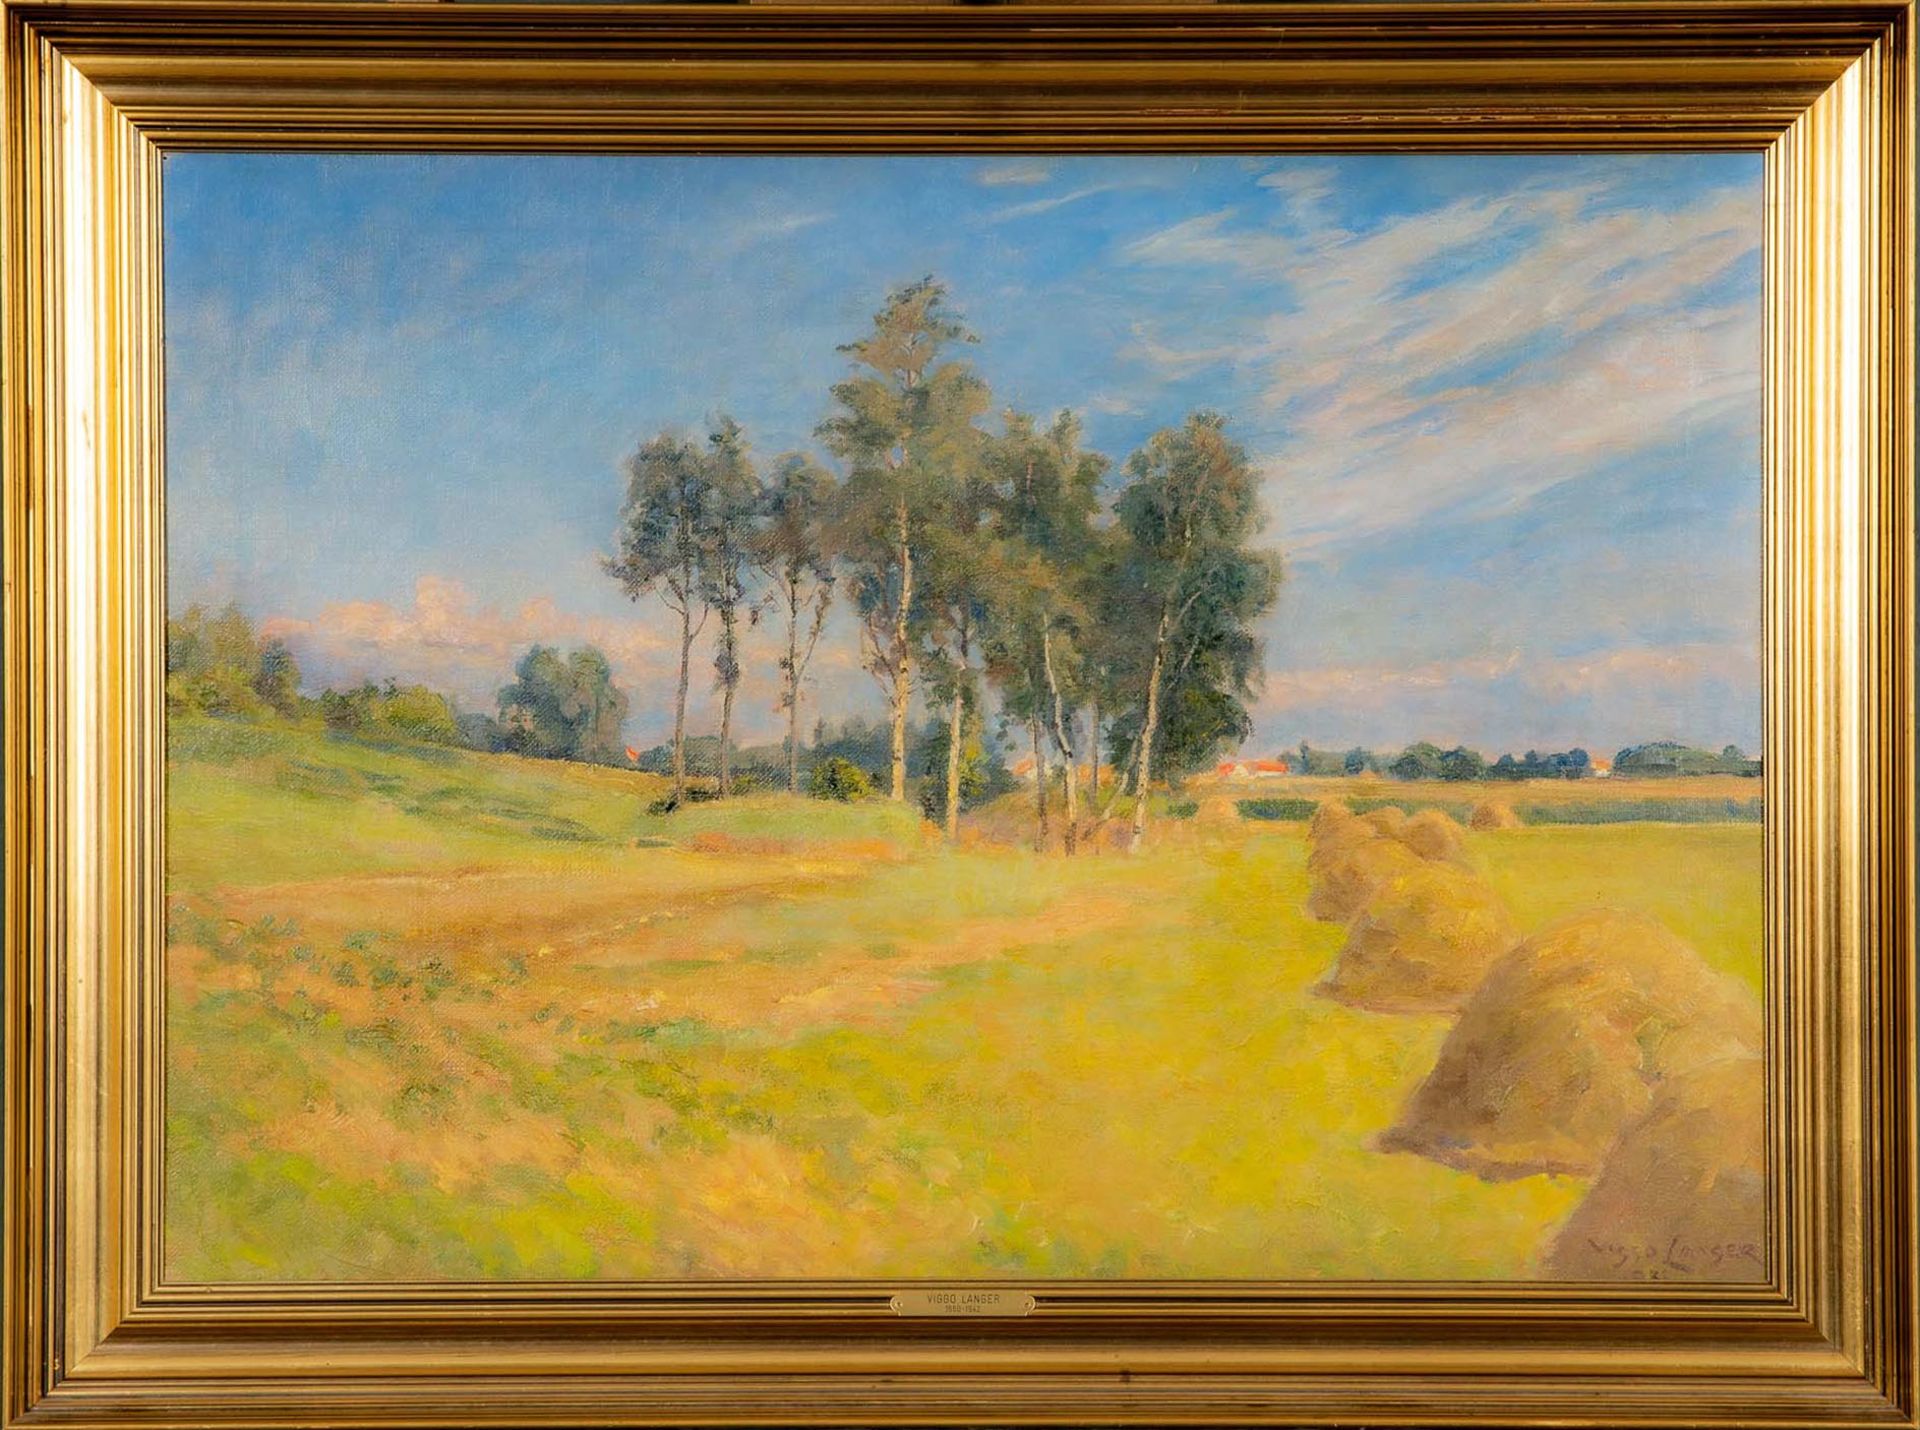 "Sommerliche Landschaft", Gemälde Öl auf Leinwand, ca. 51 x 72,5 cm, unten rechts signiert: "Viggo